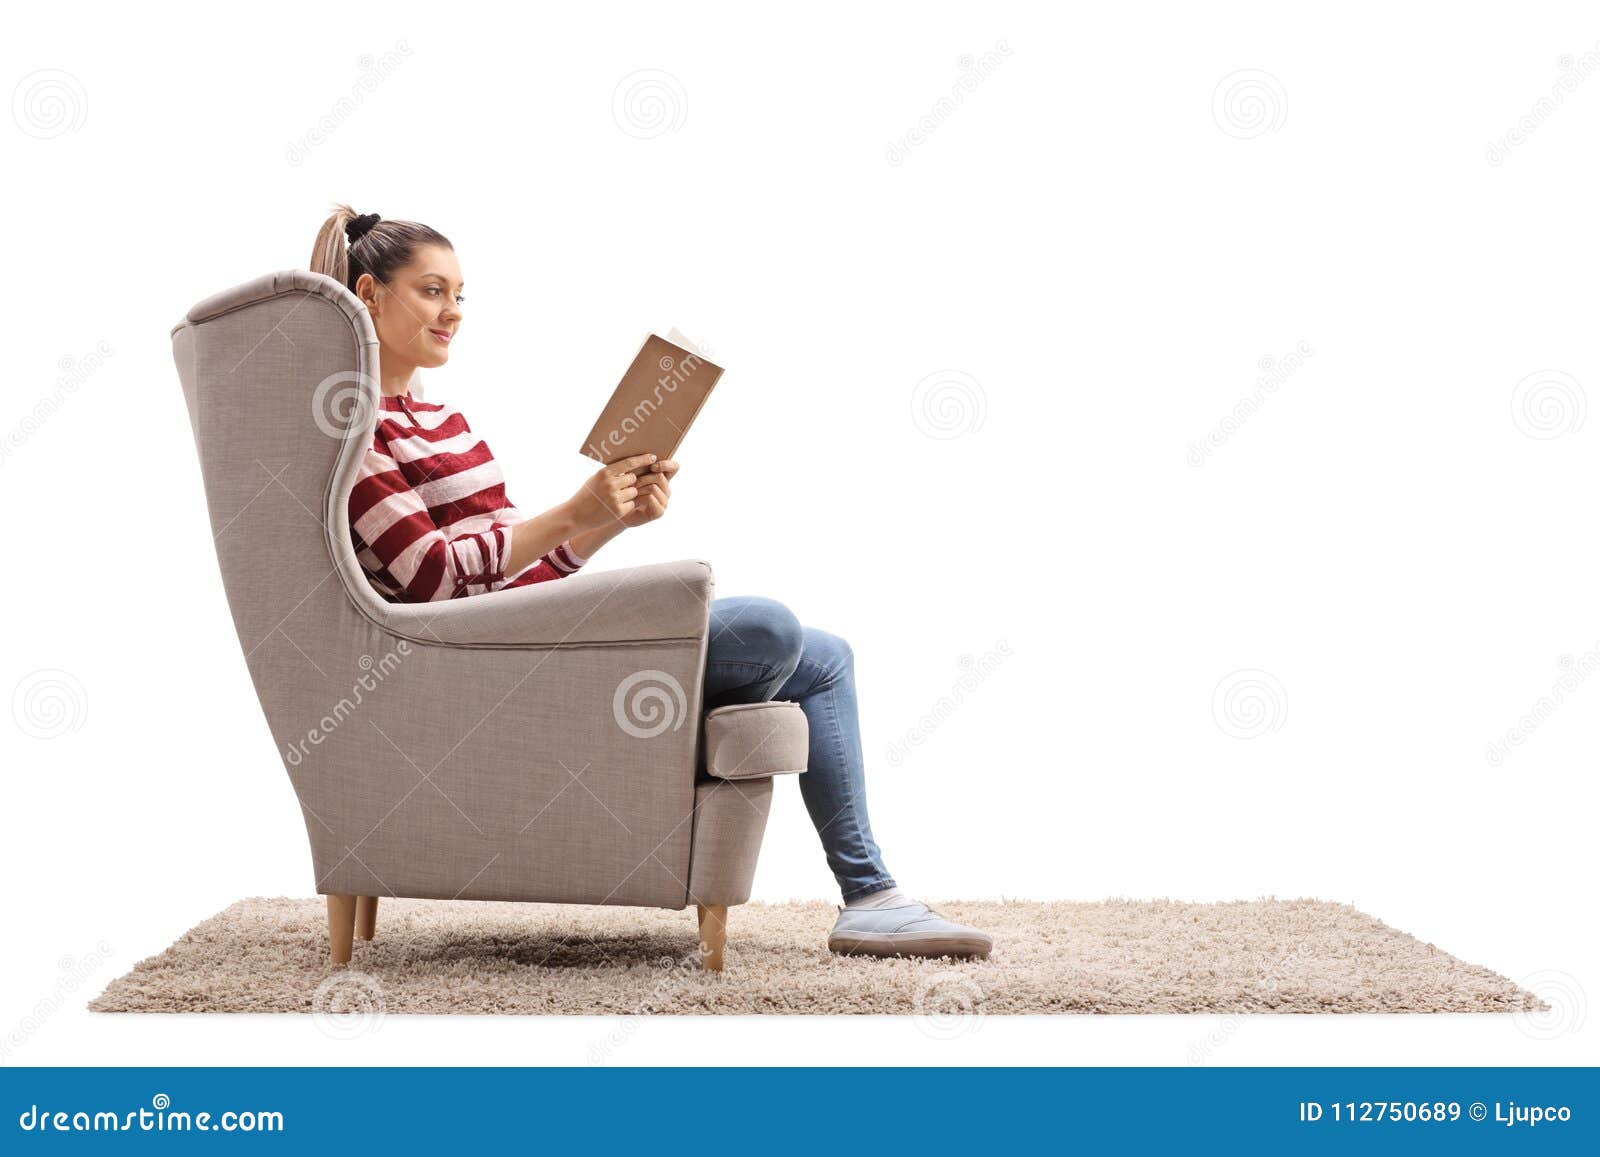 Мама сидит в кресле. Девочка сидит в кресле. Женщина читает в кресле. Девочка читает в кресле. Девушка сидит в кресле с книгой.